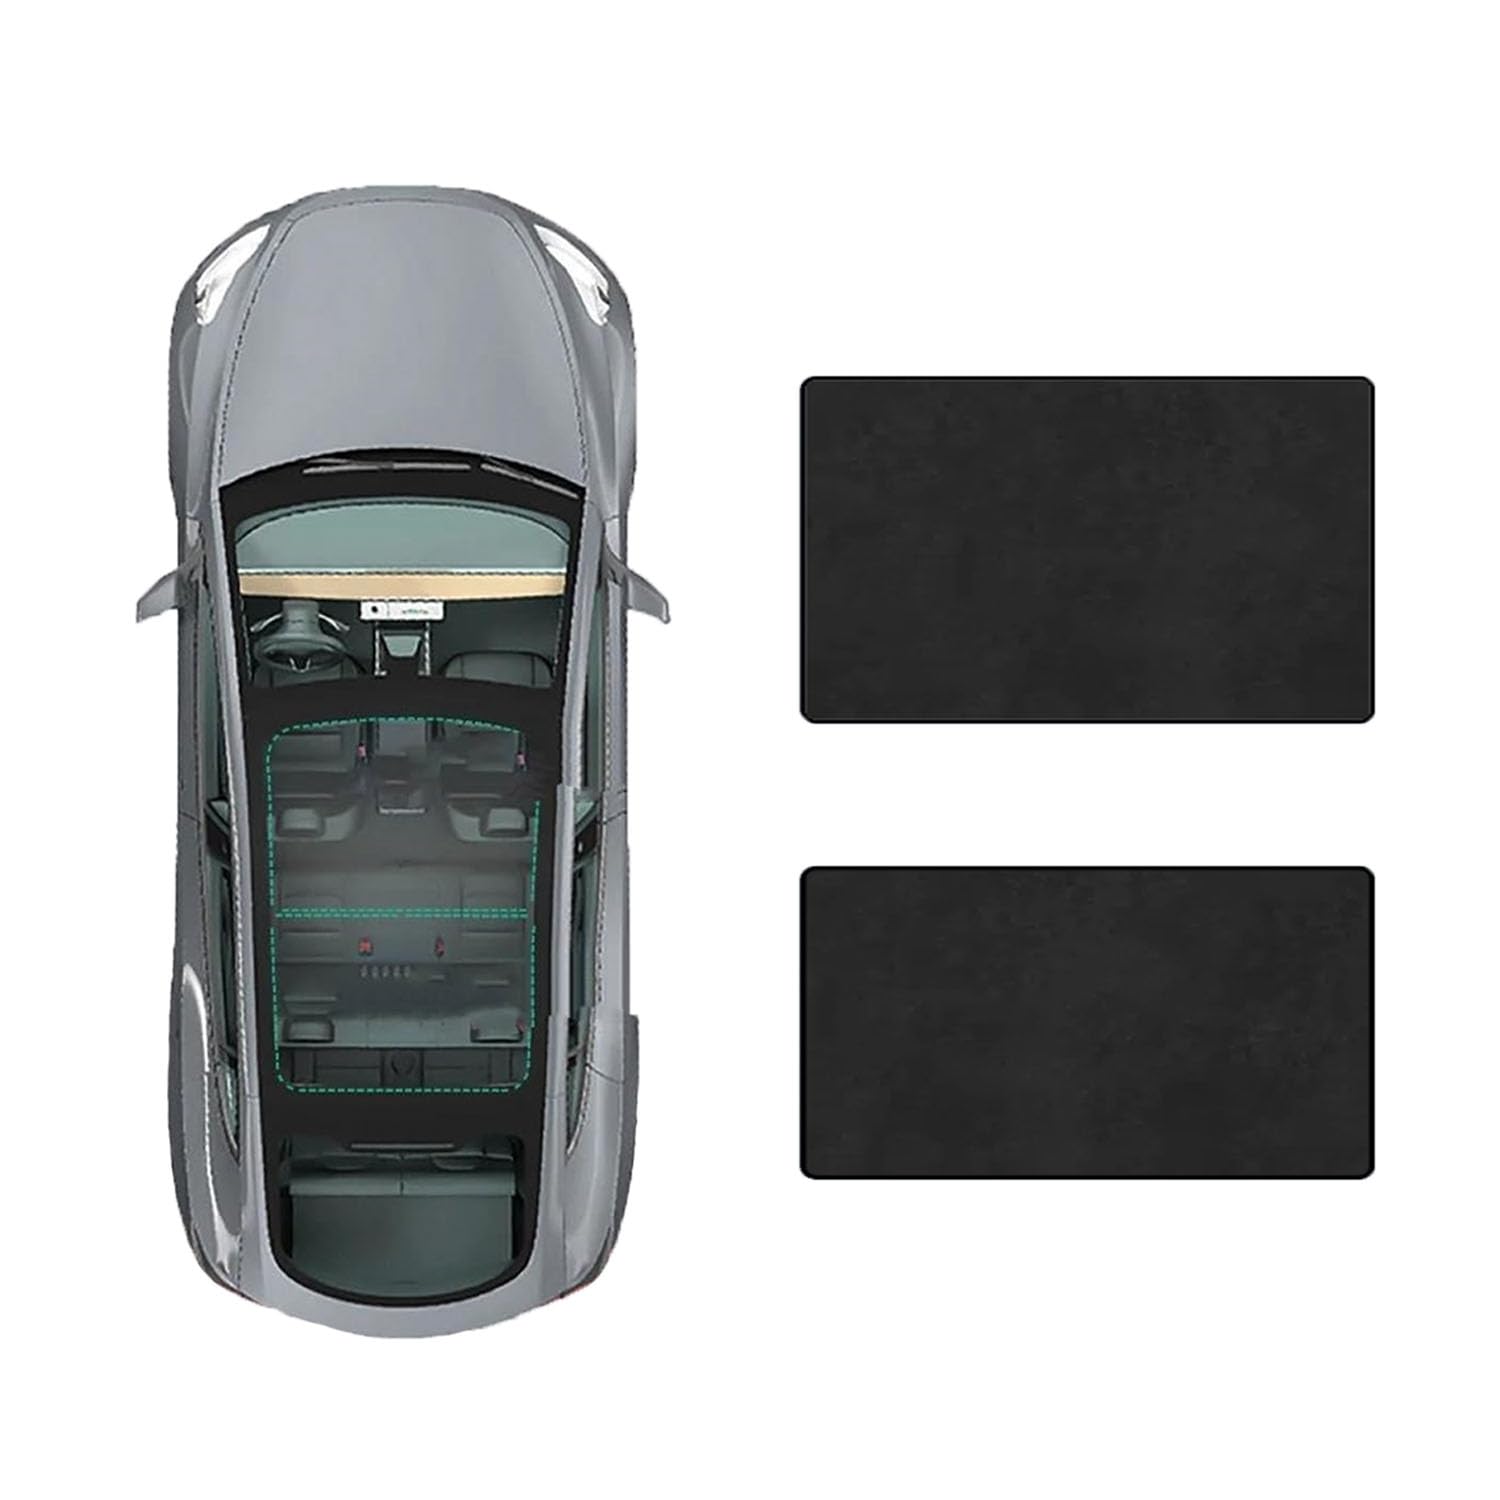 Auto-Schiebedach-Beschattung Für Toyota Camry 2024-,Auto Schiebedach Sonnenschutz Dachfenster Dach Wärme Isolierung Beschattung Innen,D-Black Suede von LiuROSE